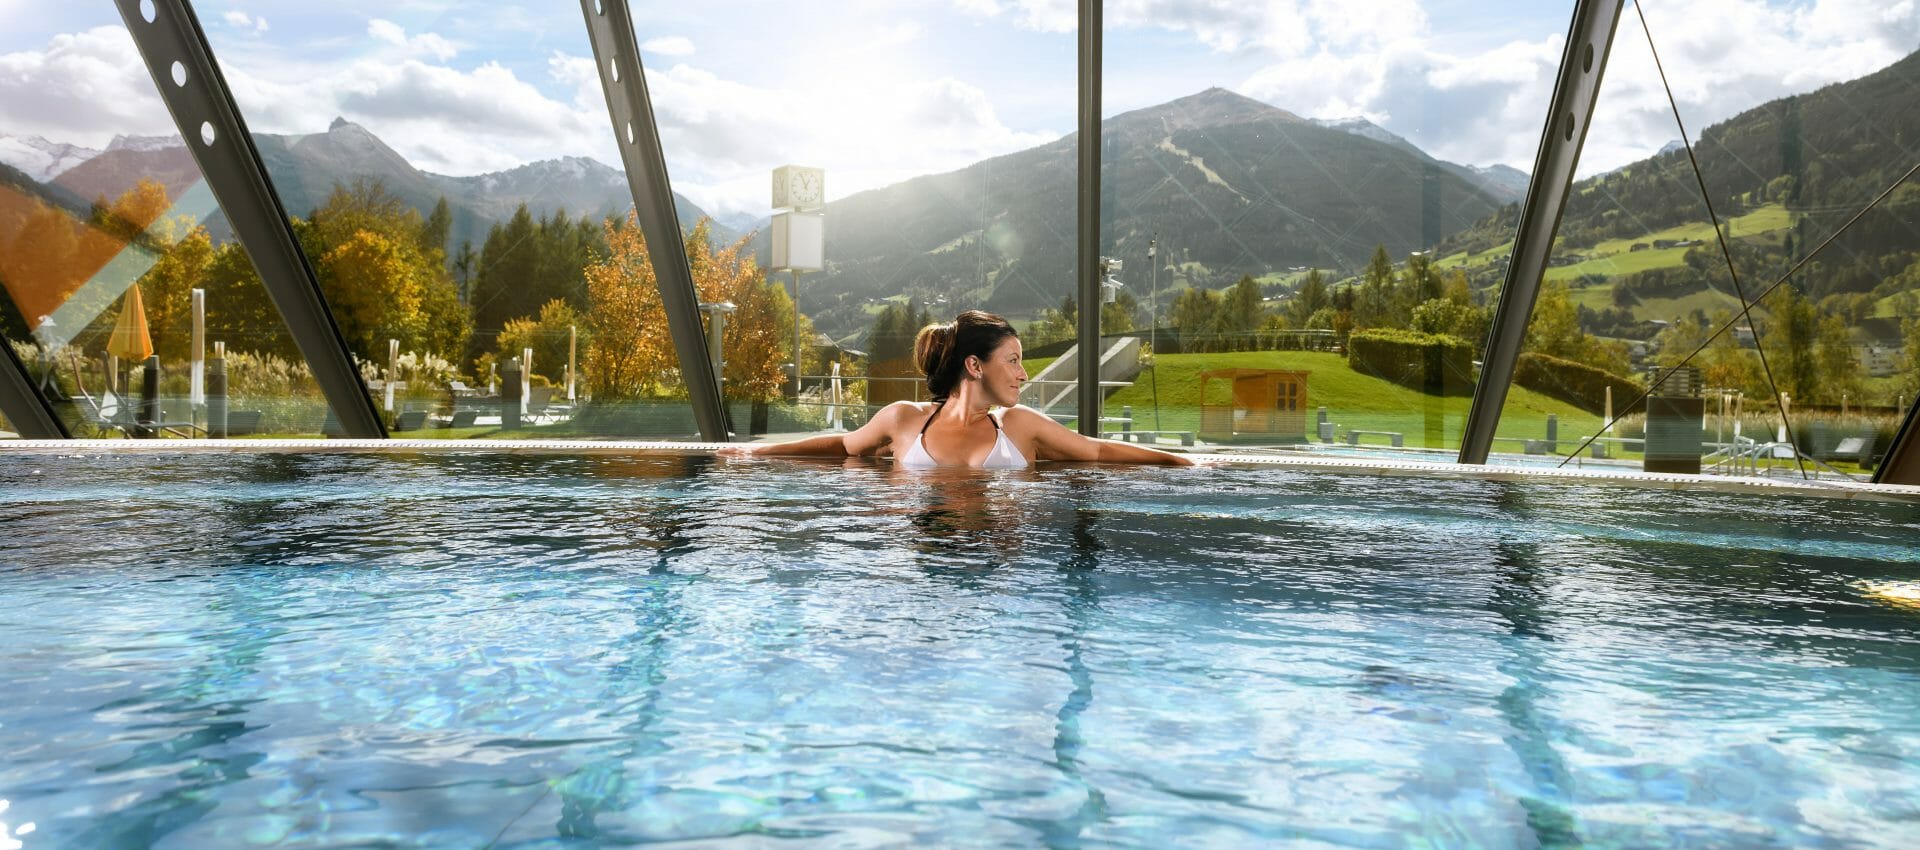 © SalzburgerLand Tourismus, Manuel Marktl, Alpine Gesundheitsregion Salzburgerland, AGS,Therme,Kur,Physiotherapie,Schwimmbad,Wasser,Entspannung,Entspannen